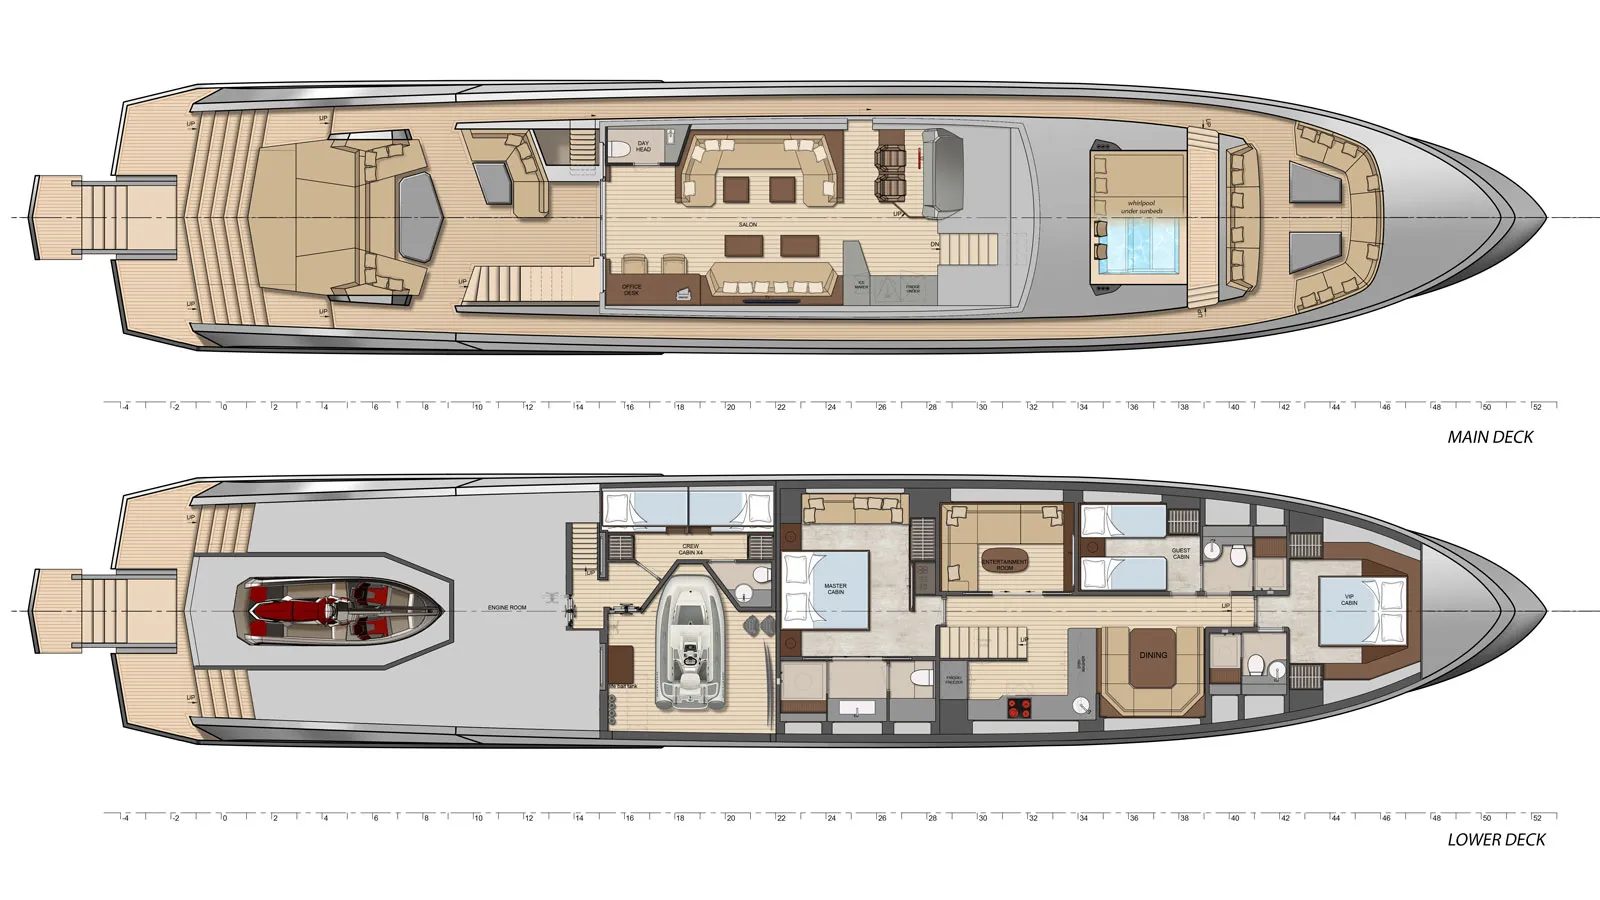 Vanquish Superyachts VQ115 Veloce - boat shopping